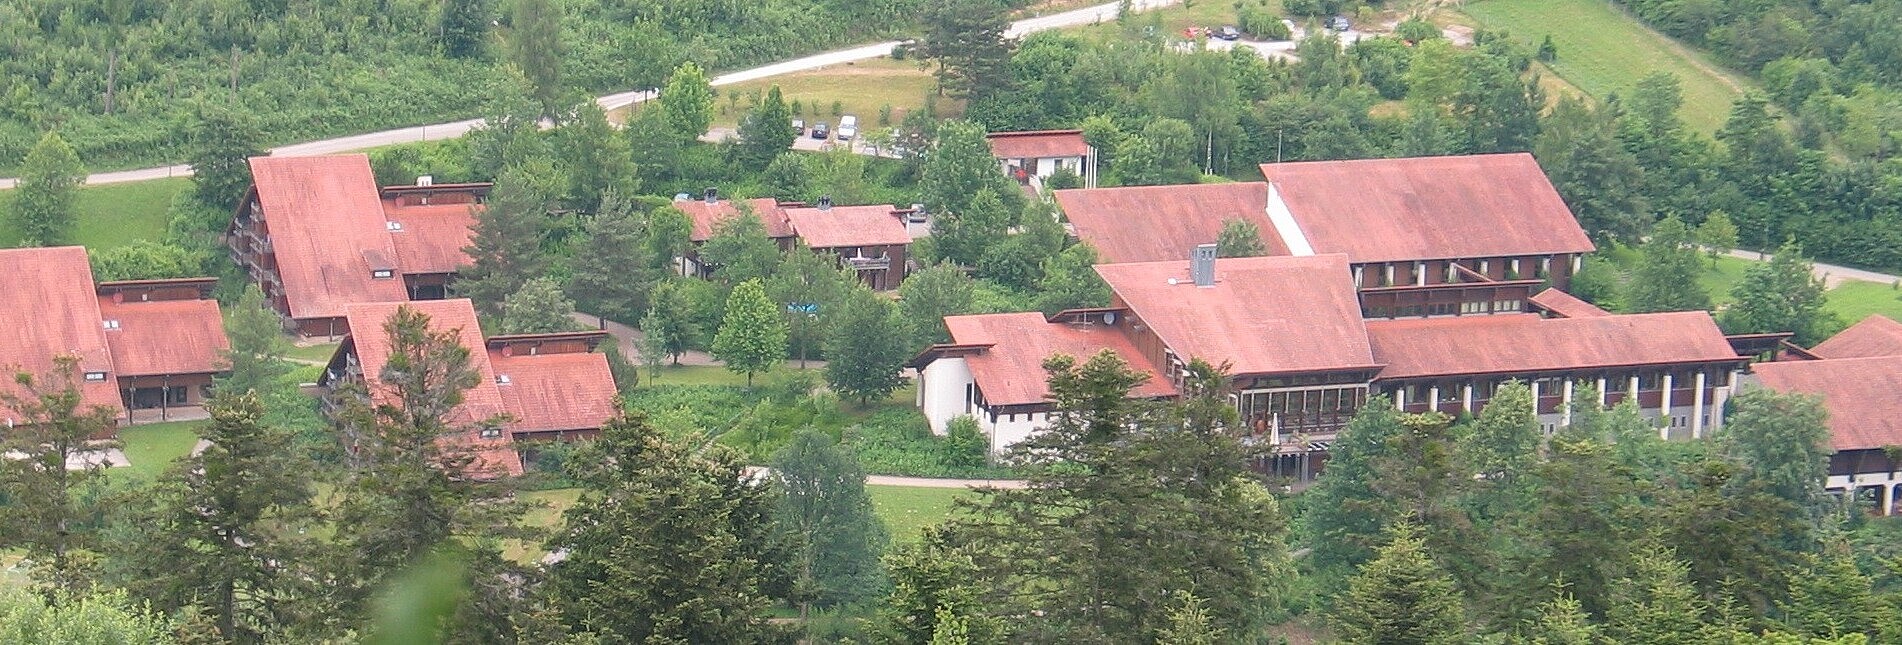 Auf dem Bild sind die Gebäude des FAZ Mattenhof zu sehen. Links drei Wohnheimgebäude, rechts daneben das Hauptgebäude, im Anschluss das Werkstattgebäude.